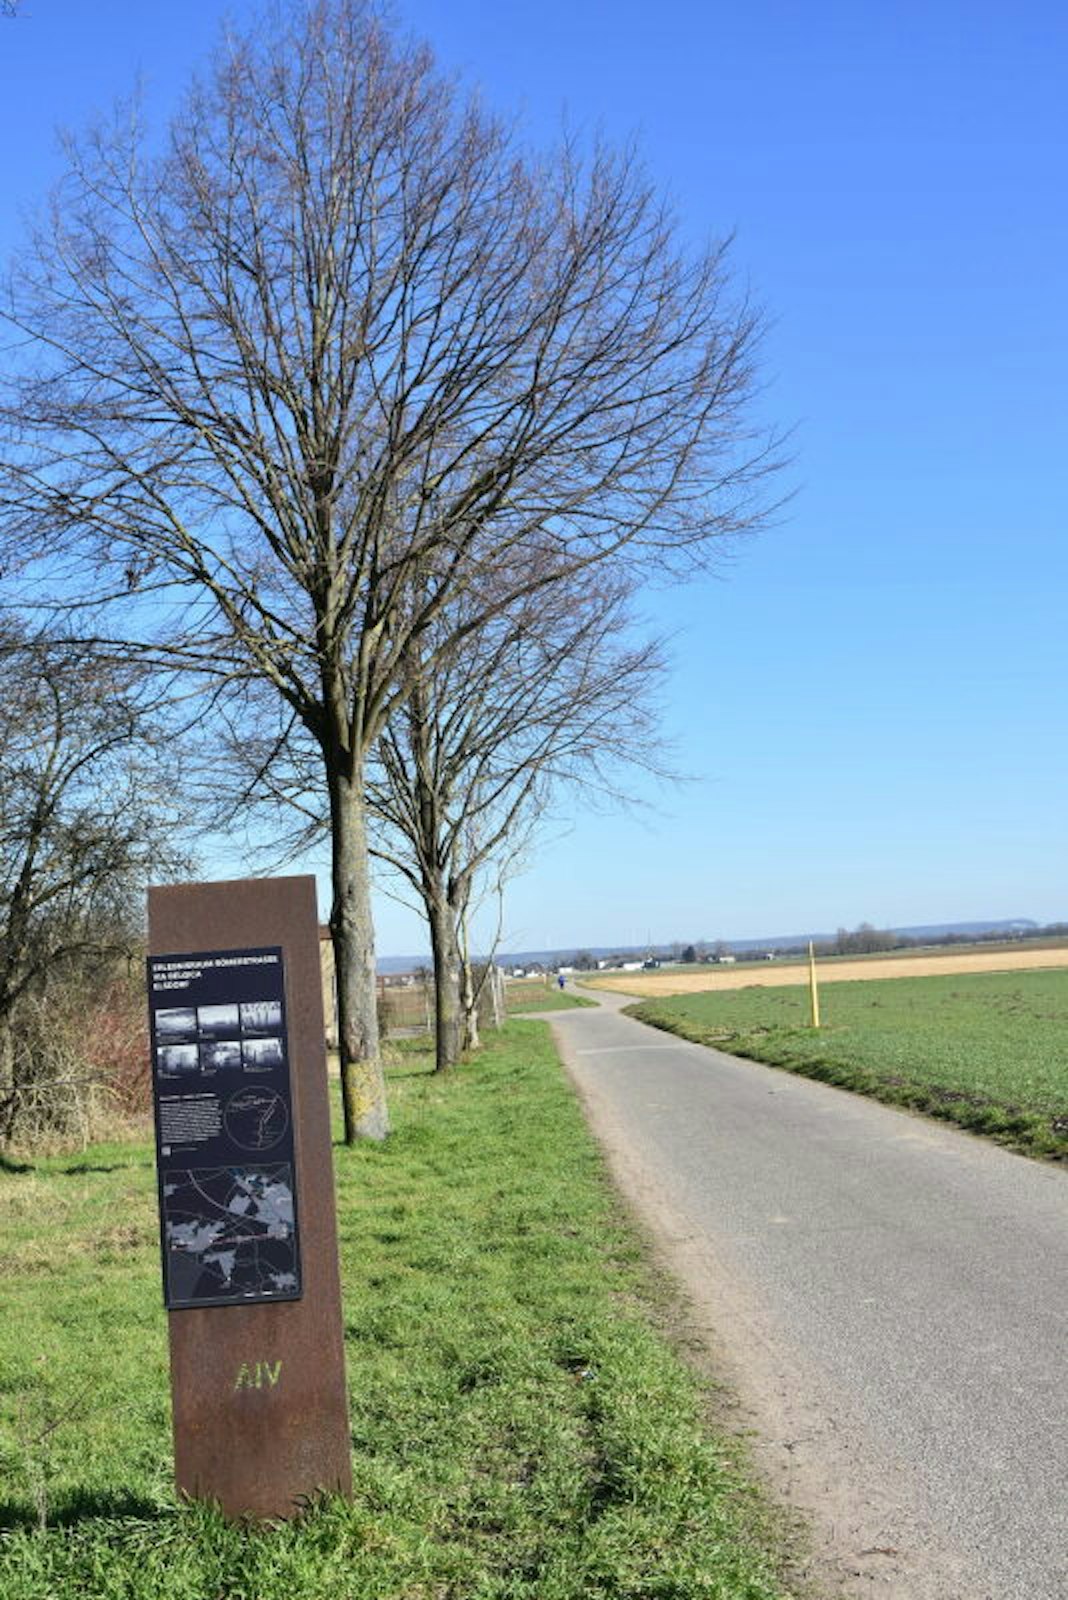 Entlang der Via belgica zwischen Elsdorf und Grouven, heute ein Feldweg, lag der Vicus als kleines römisches Straßendorf.